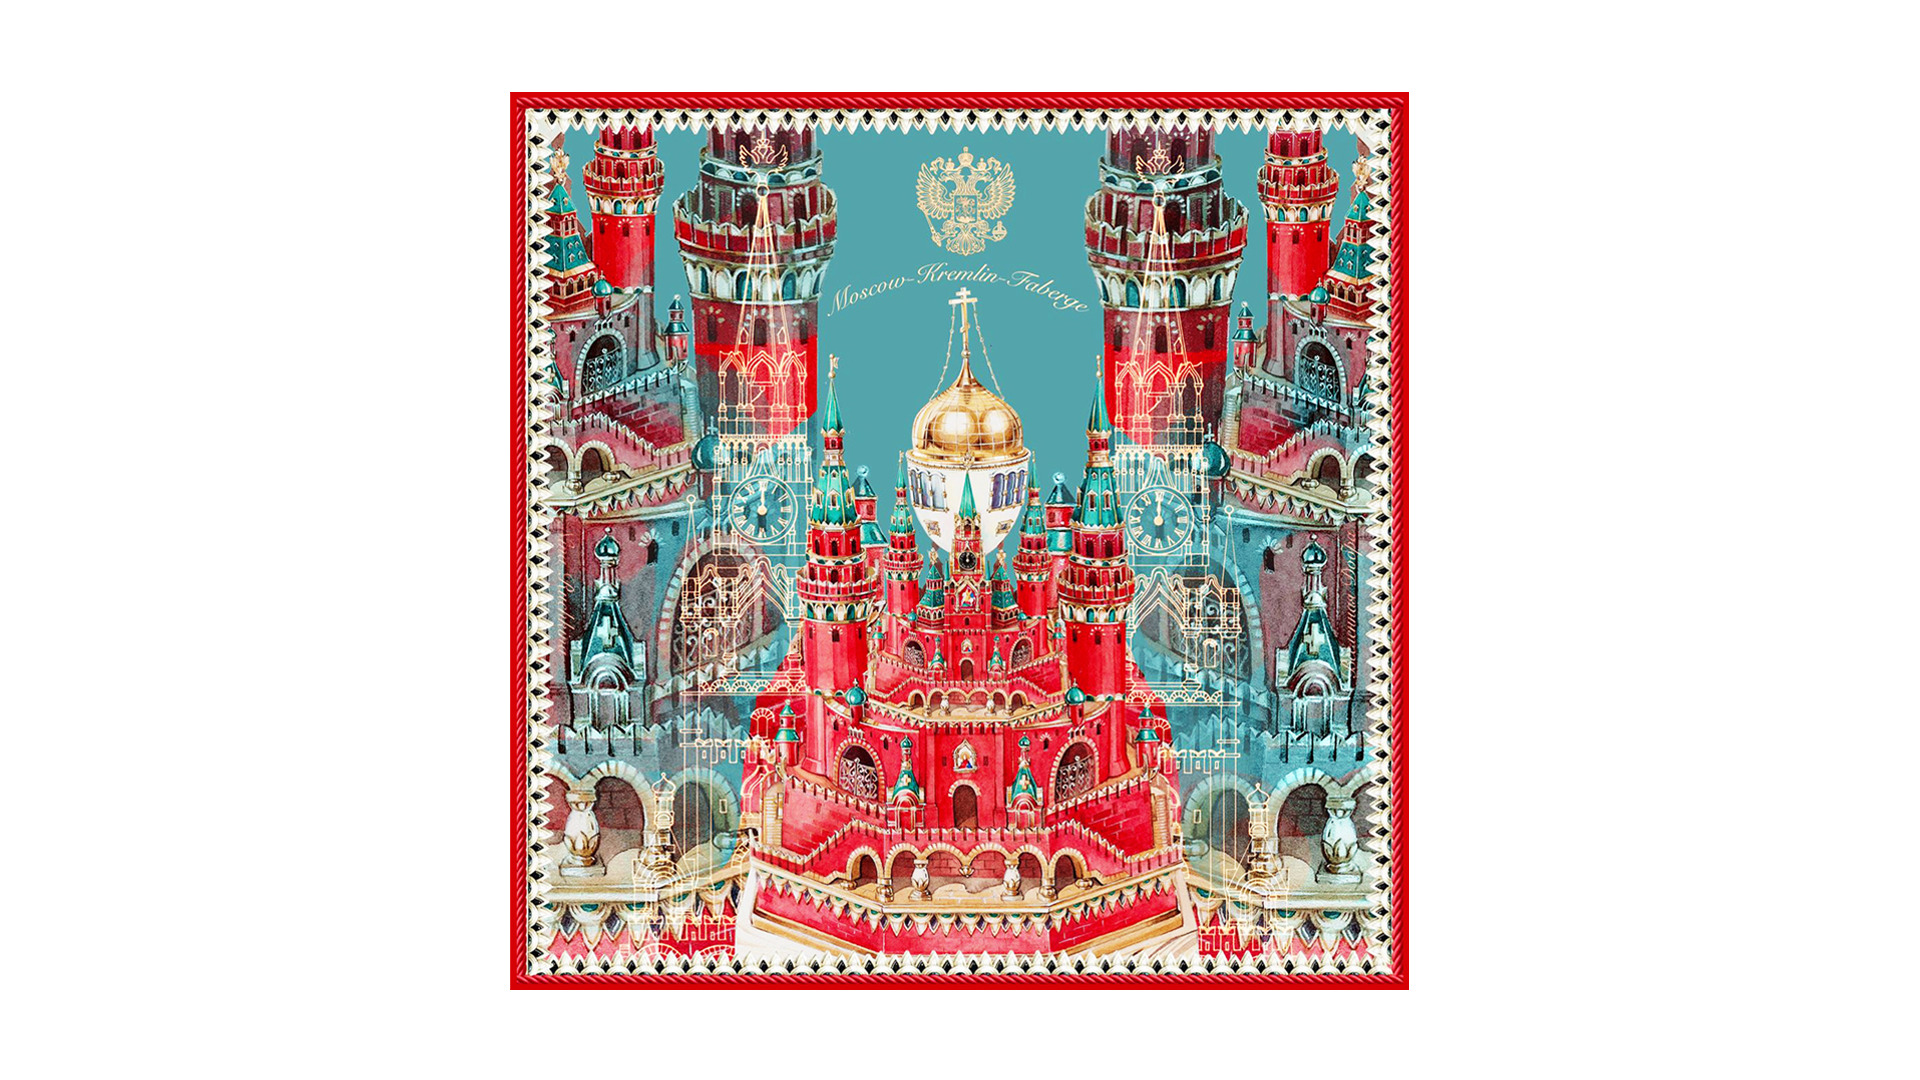 Платок сувенирный Русские в моде Москва кремль Фаберже 90х90 см, шелк, ручная подшивка